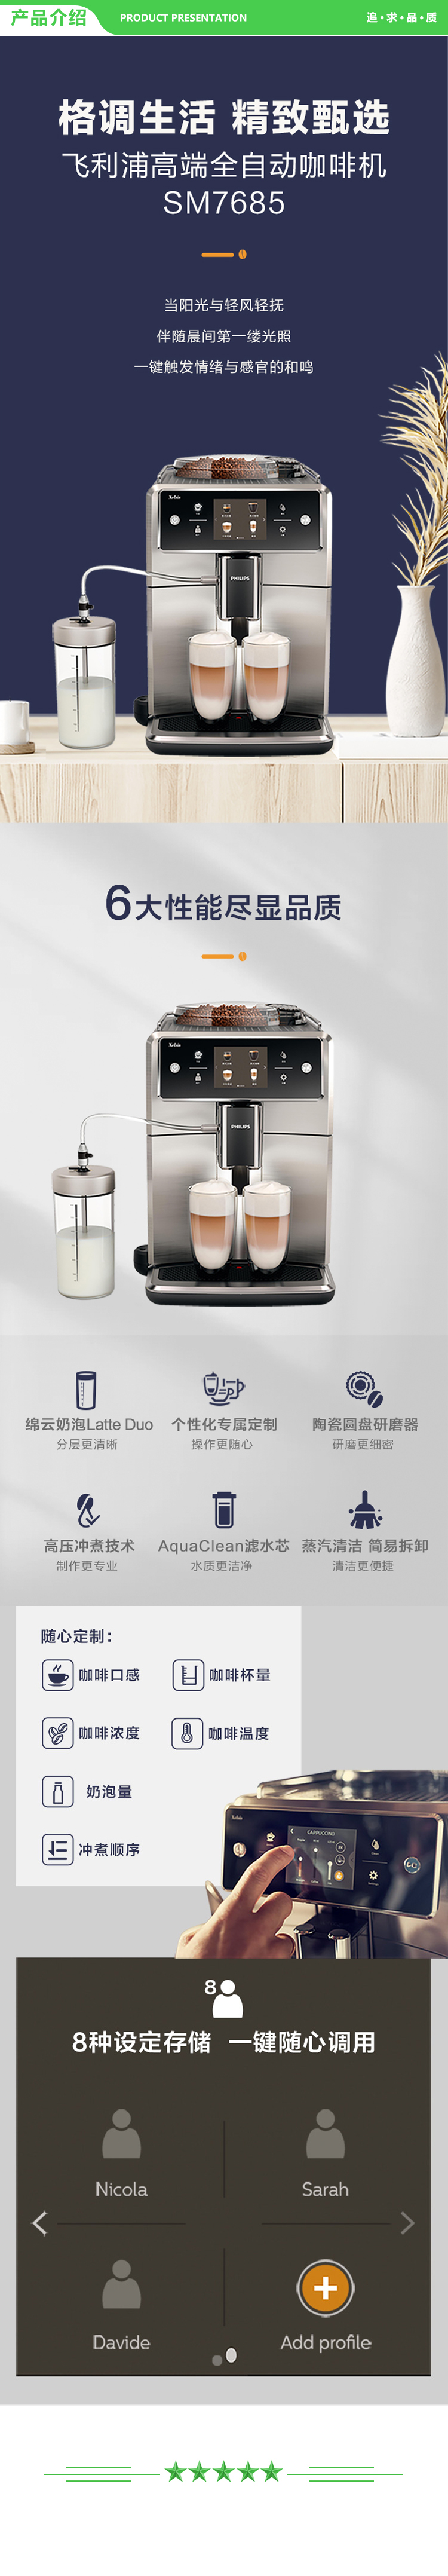 飞利浦 PHILIPS SM7685 07 咖啡机 意式全自动浓缩 带可拆洗奶泡系统储奶容器 .jpg